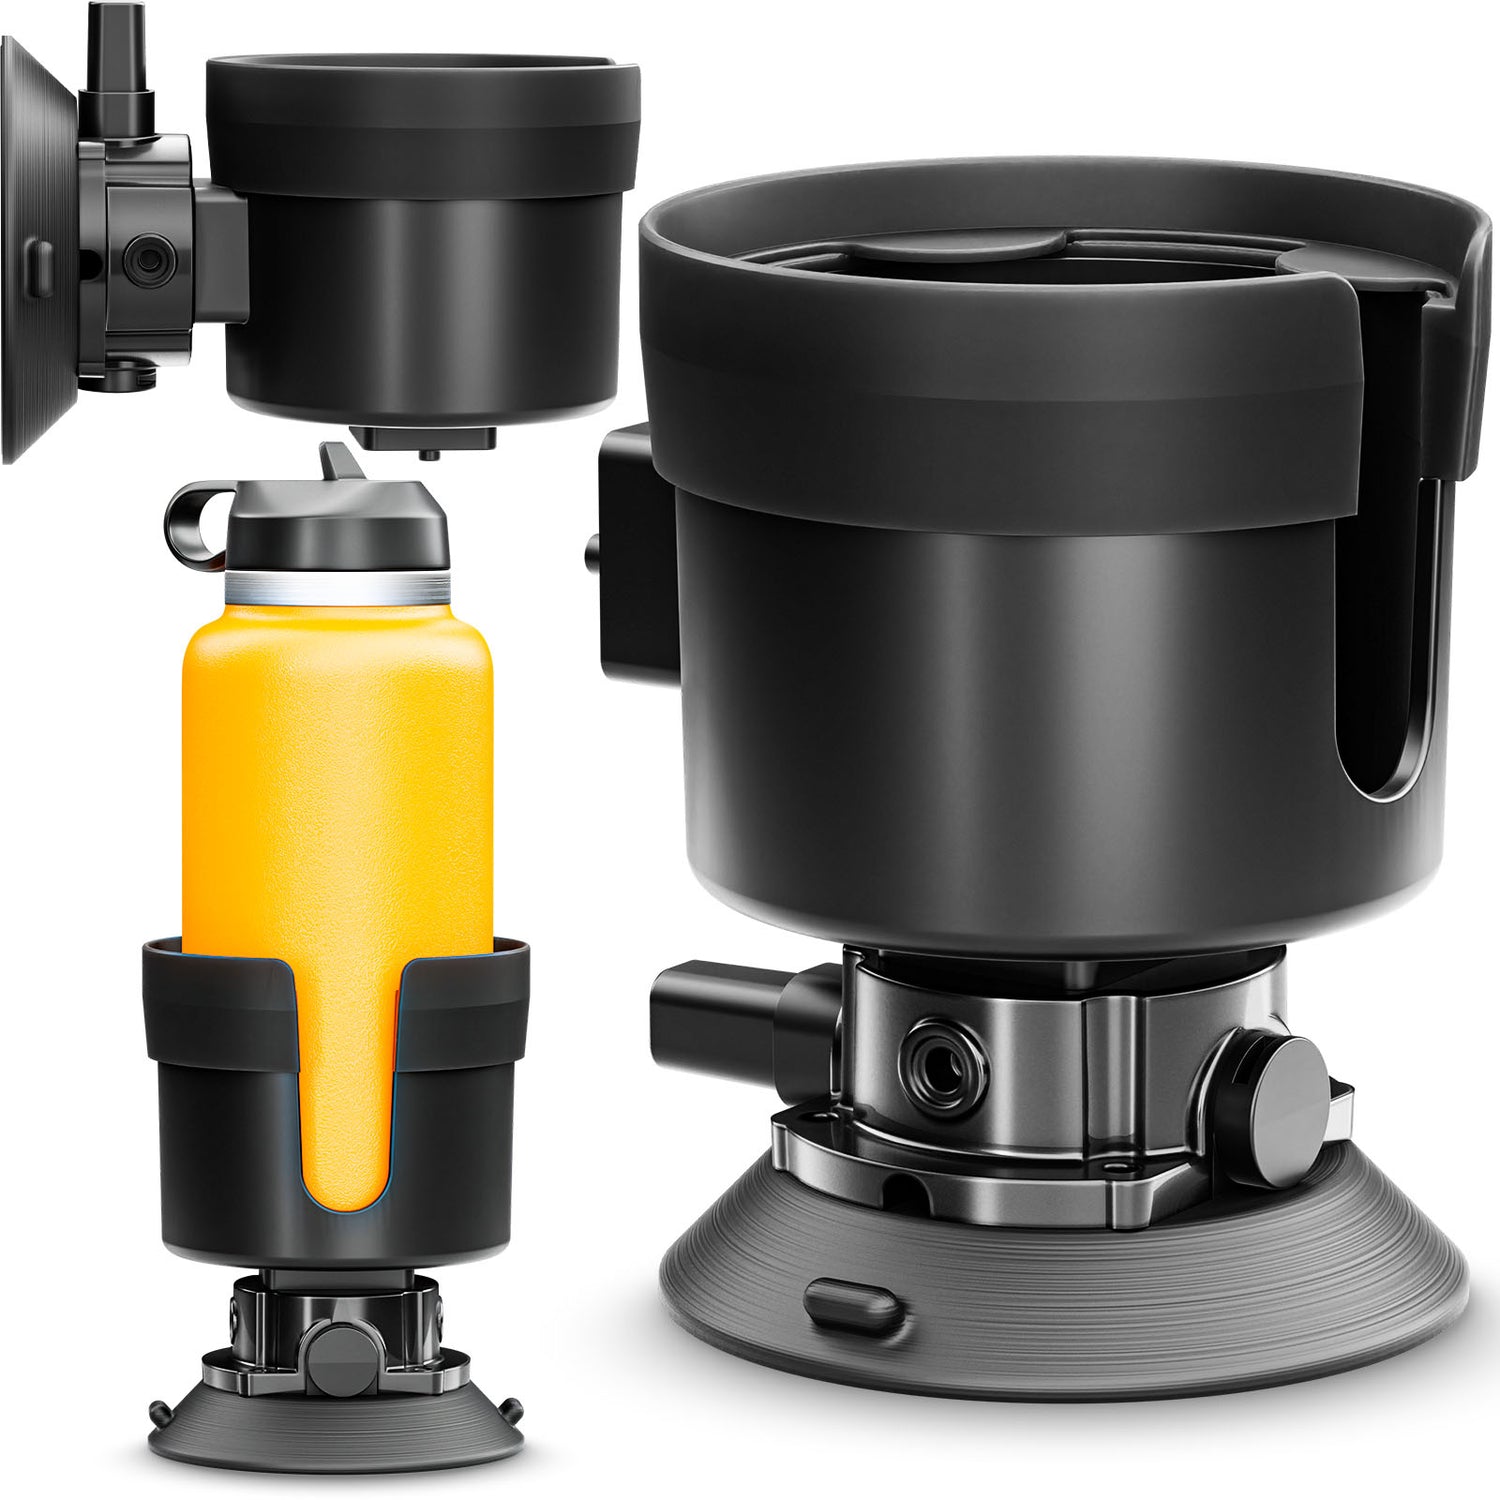 Vacuum Expander - Vacuum Mount Cup Holder